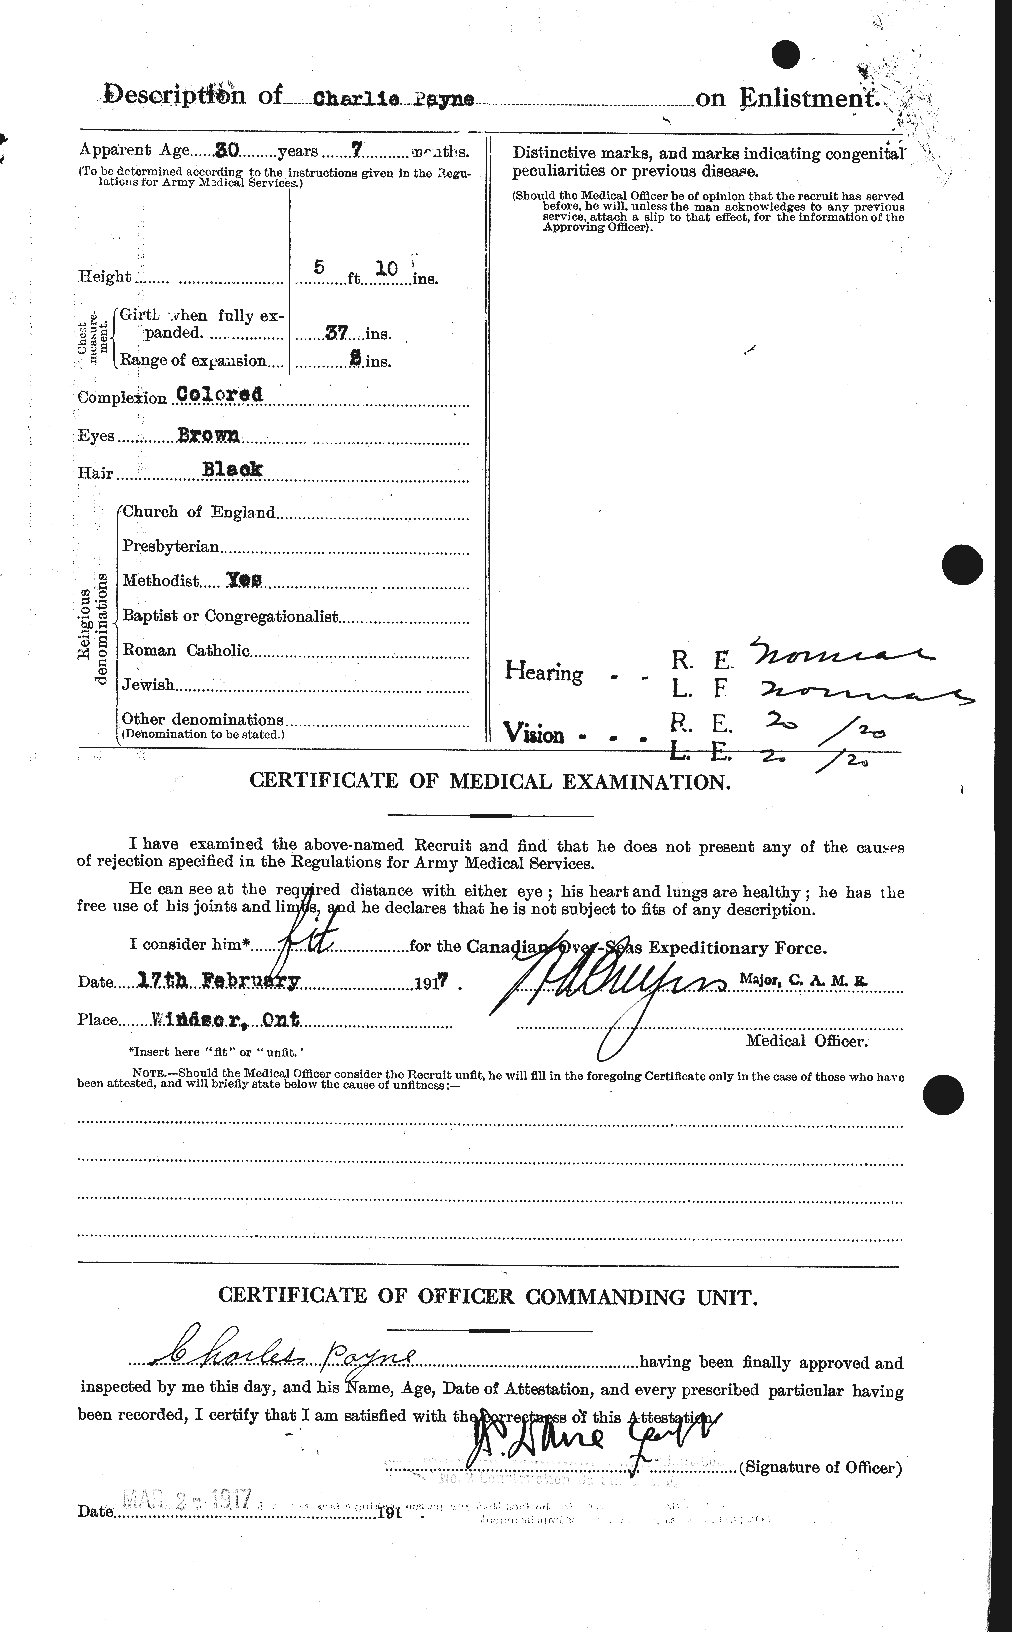 Dossiers du Personnel de la Première Guerre mondiale - CEC 569860b